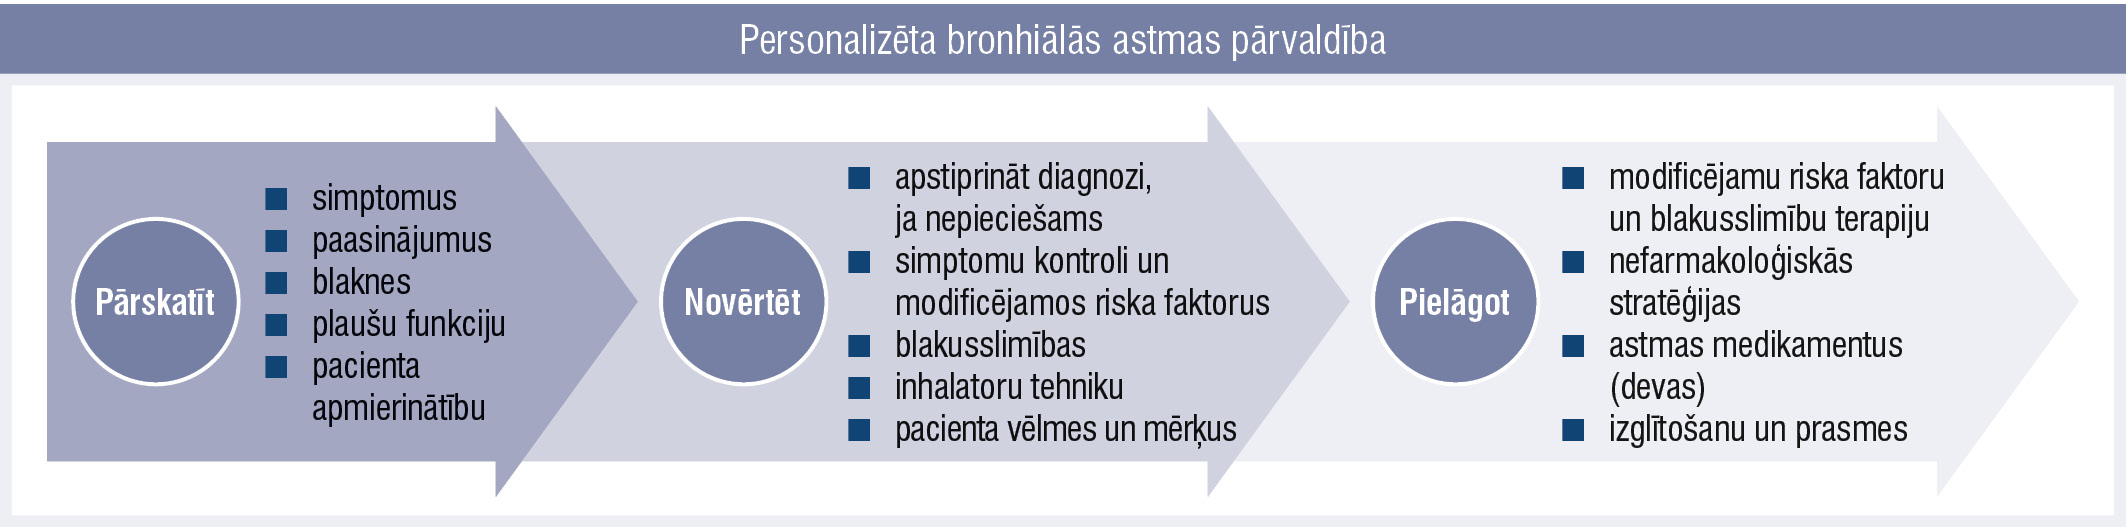 Personalizēta bronhiālās astmas pārvaldība